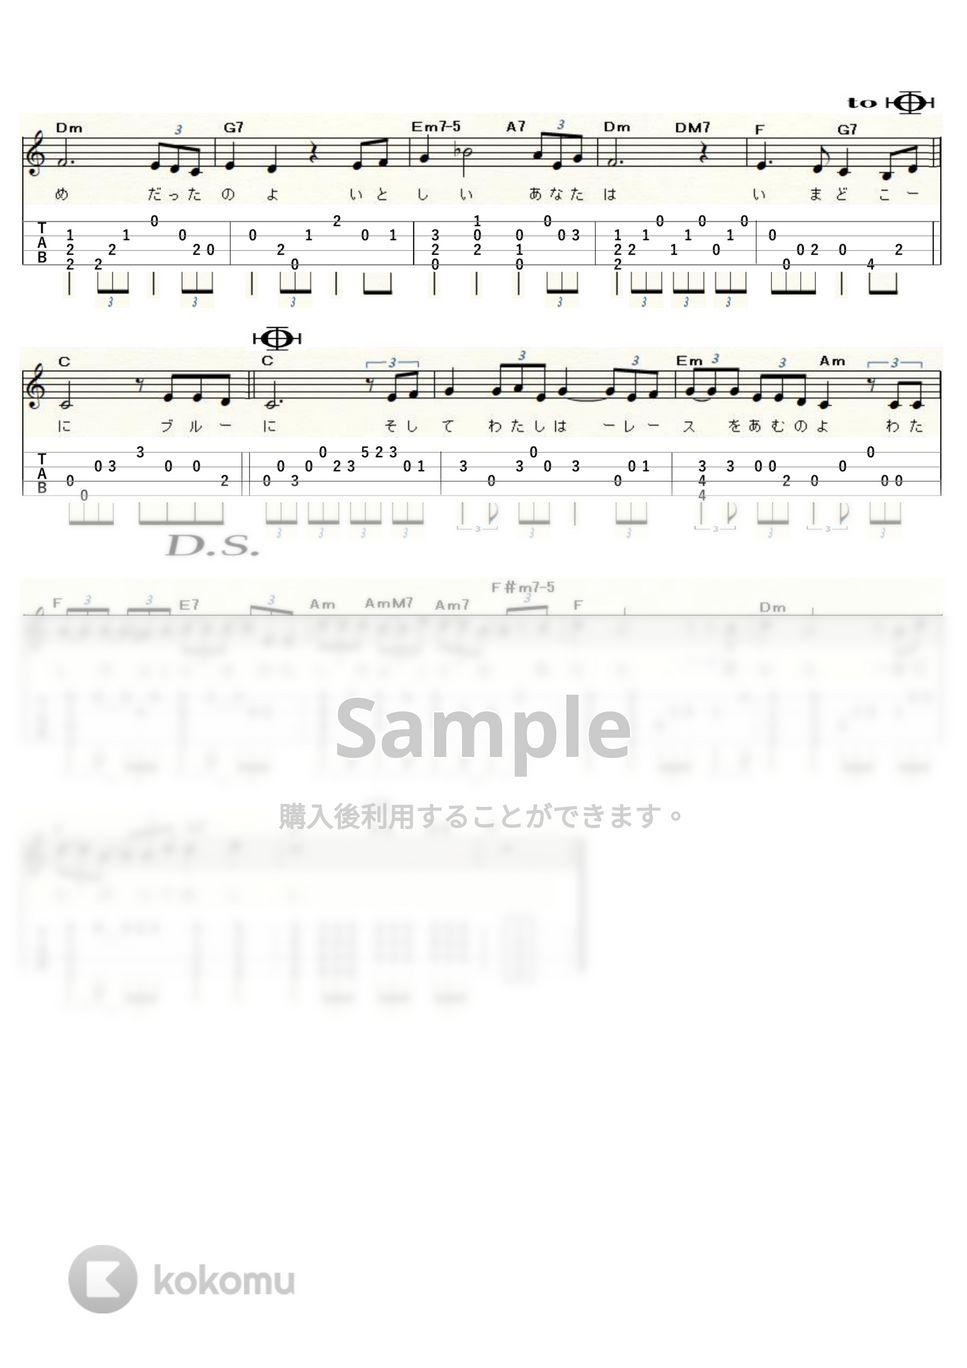 小坂明子 - あなた (Low-G) by ukulelepapa